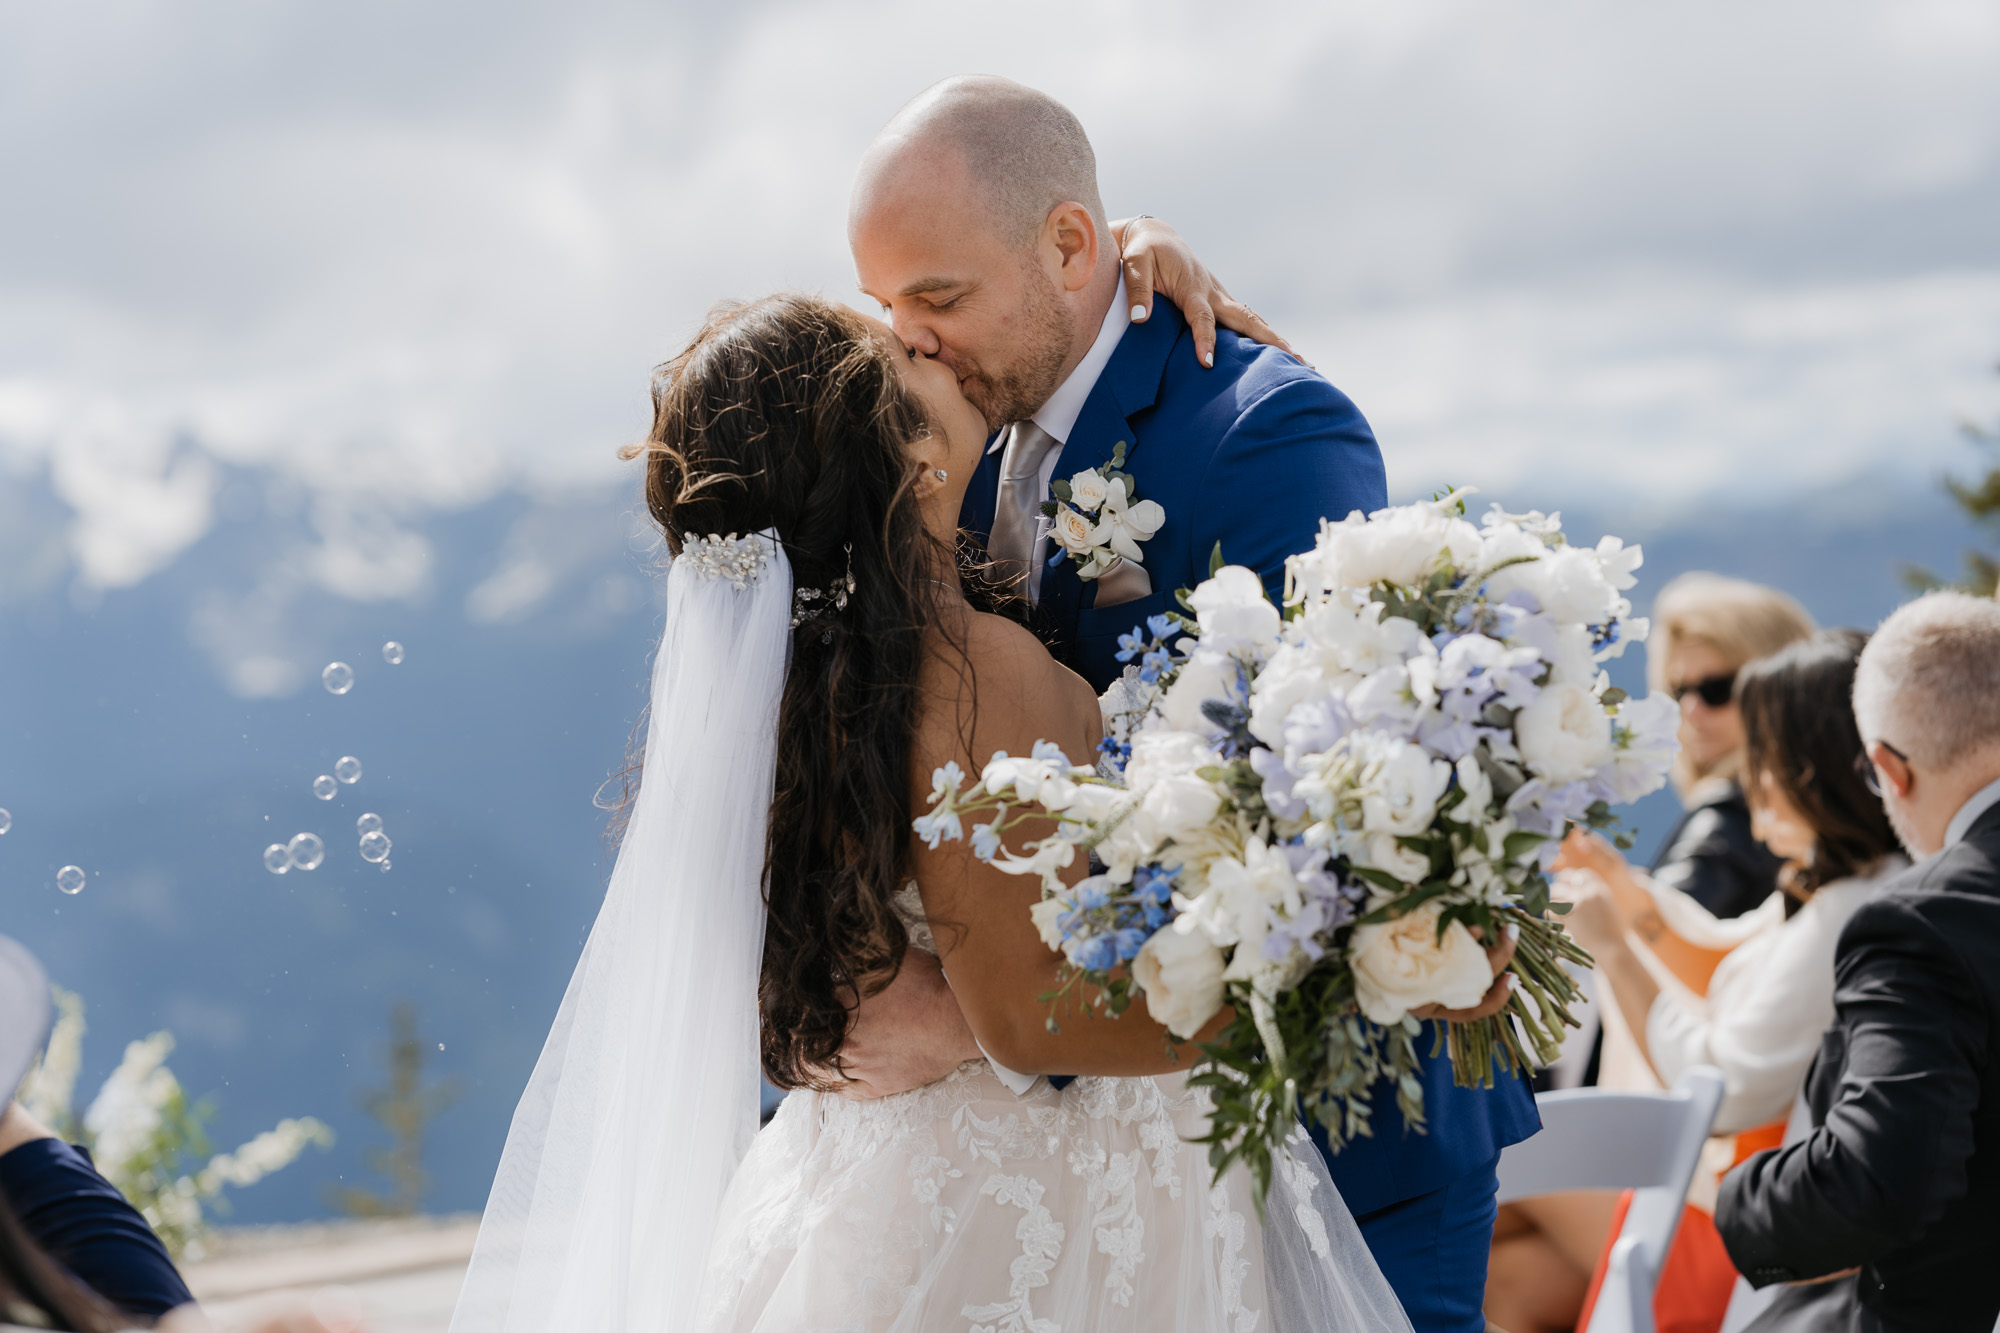 A small wedding atop Crystal Mountain, near Mt. Rainier national park.